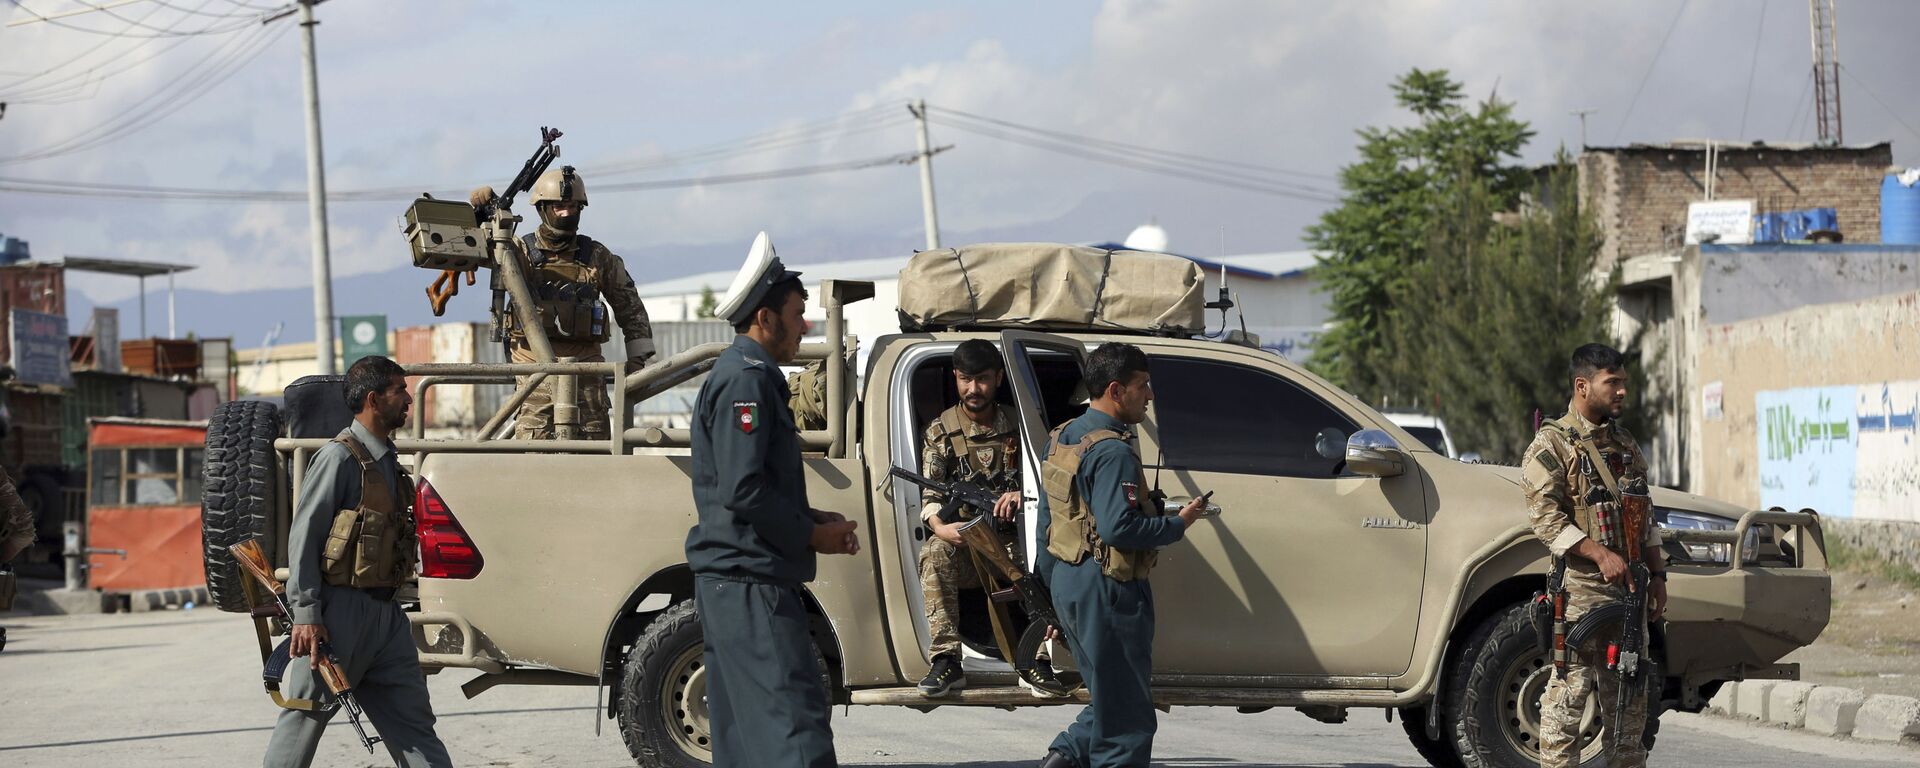 Афганские силовики прибыли на место где произошел взрыв в мечети 24 мая 2019 - Sputnik Таджикистан, 1920, 26.07.2021